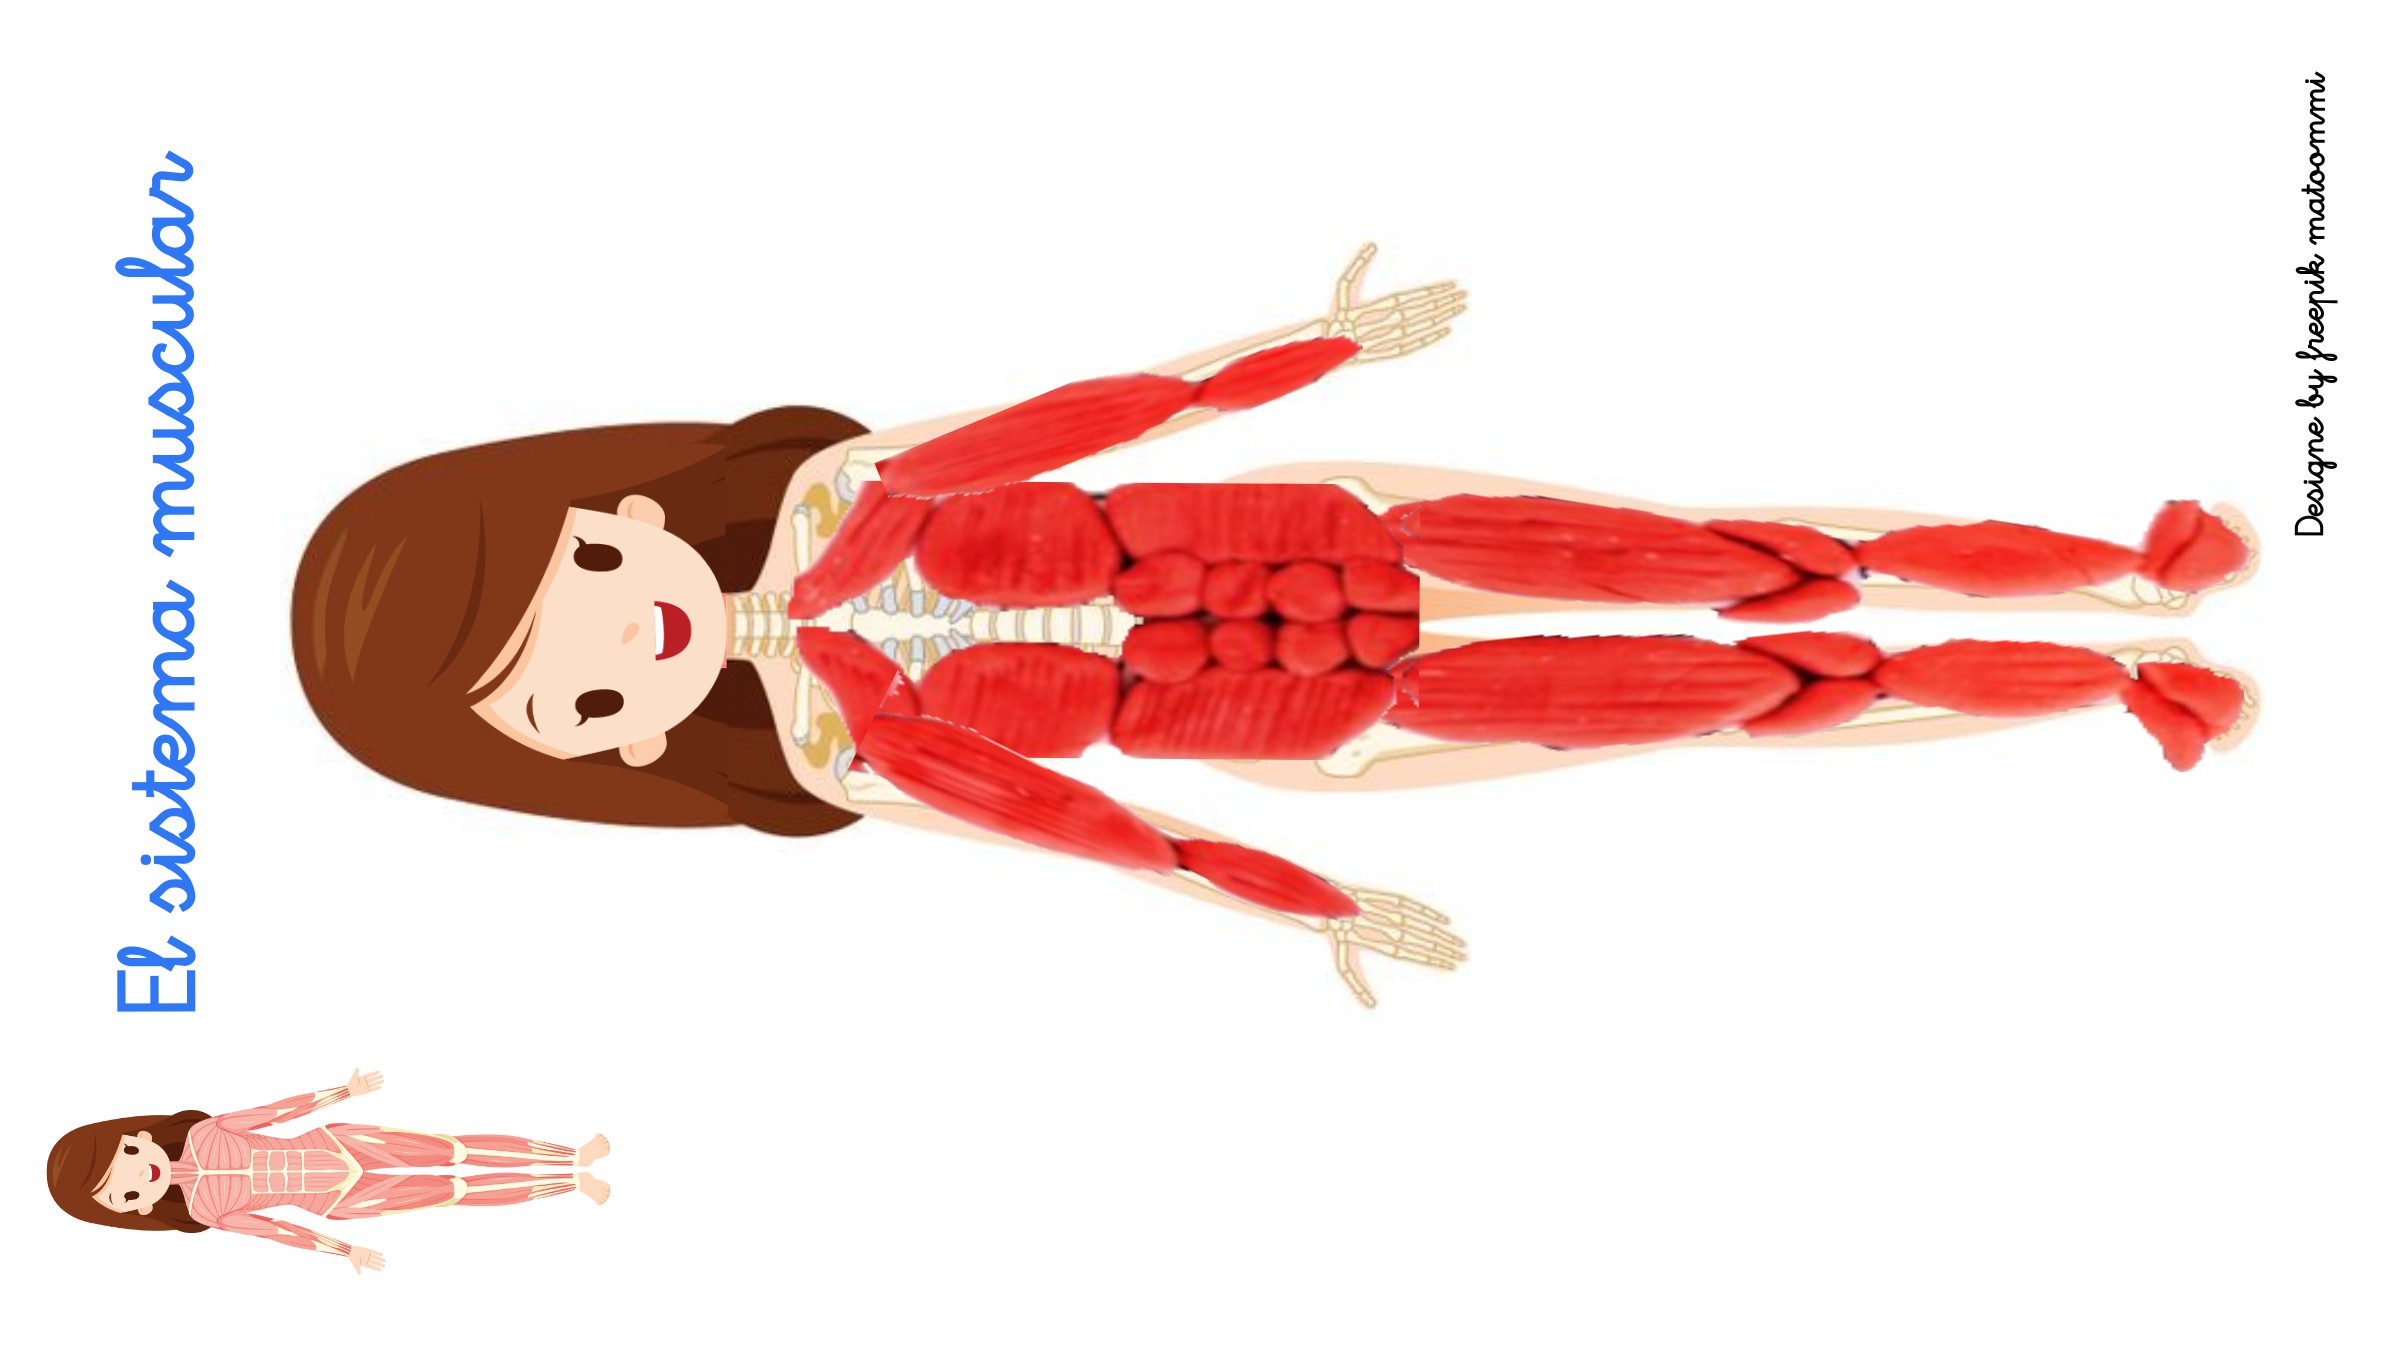 Plantilla de una niña cuyo interior es el sistema esquelético y encima plastilina roja formando los músculos